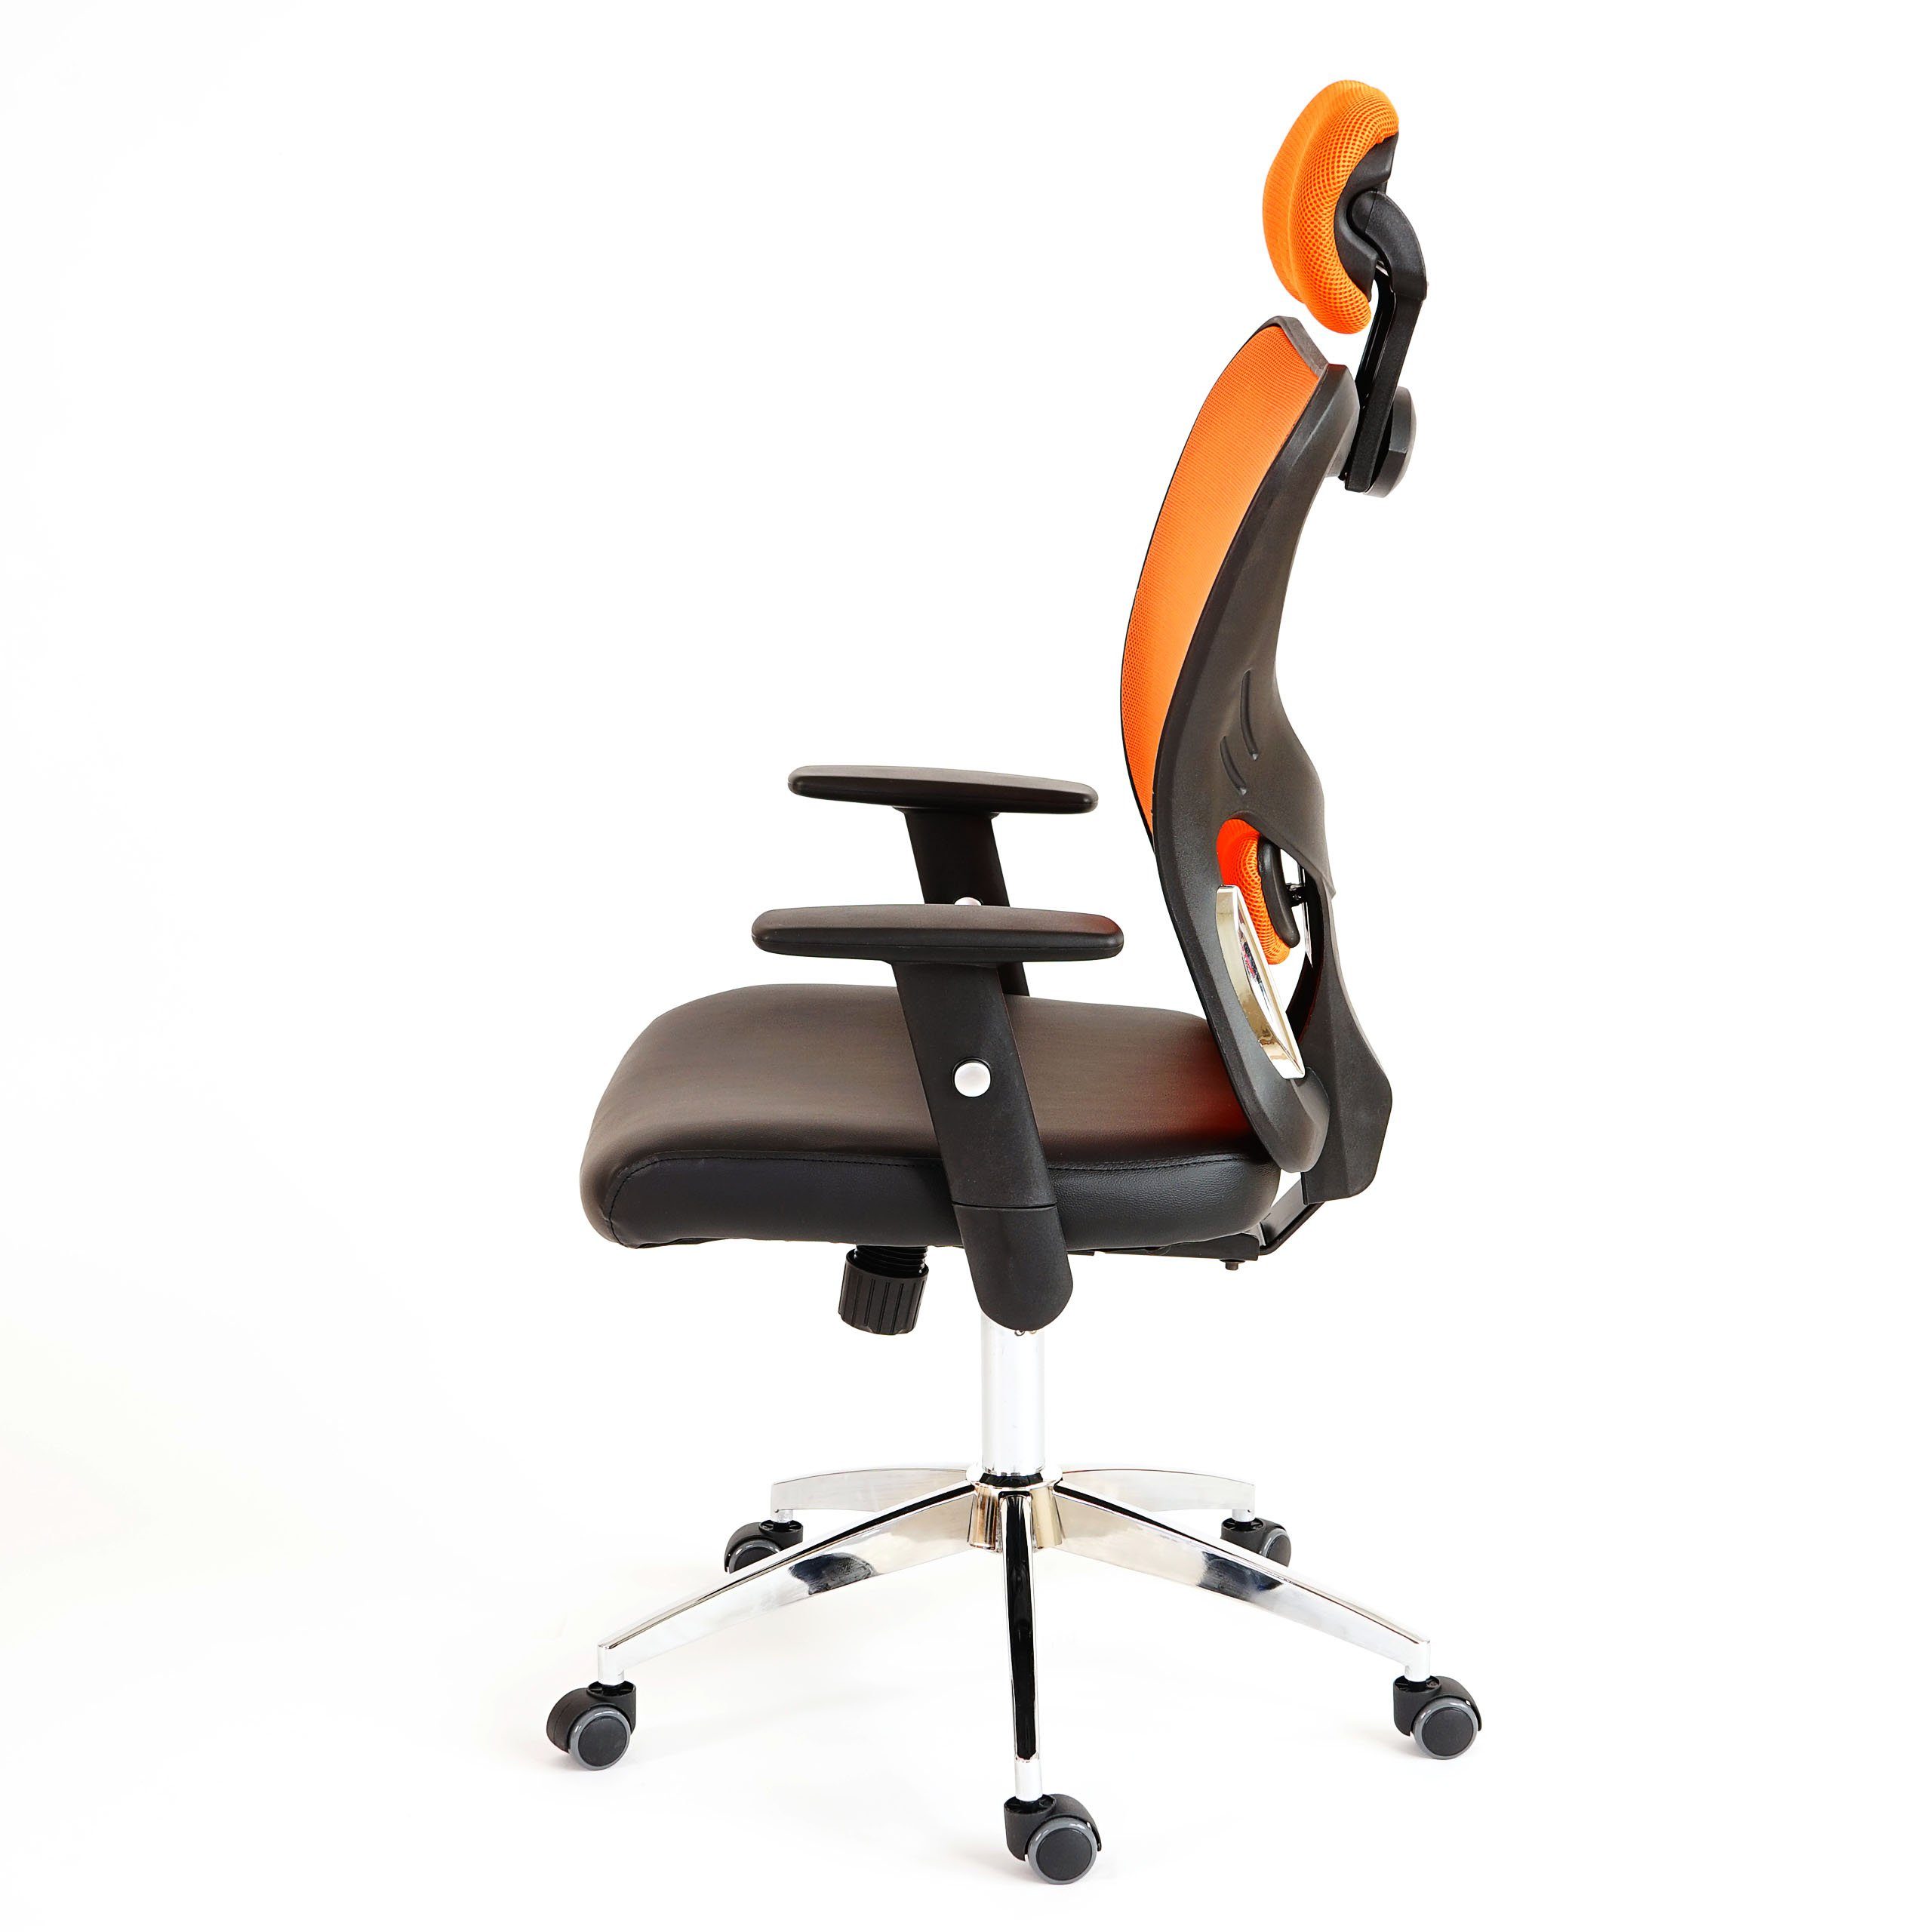 flexible höhenverstellbar, Pamplona, + schwarz,orange Schreibtischstuhl MCW Armlehnen, Kopfstütze Kopfstütze Lendenwirbelstütze Höhenverstellbare stufenlos